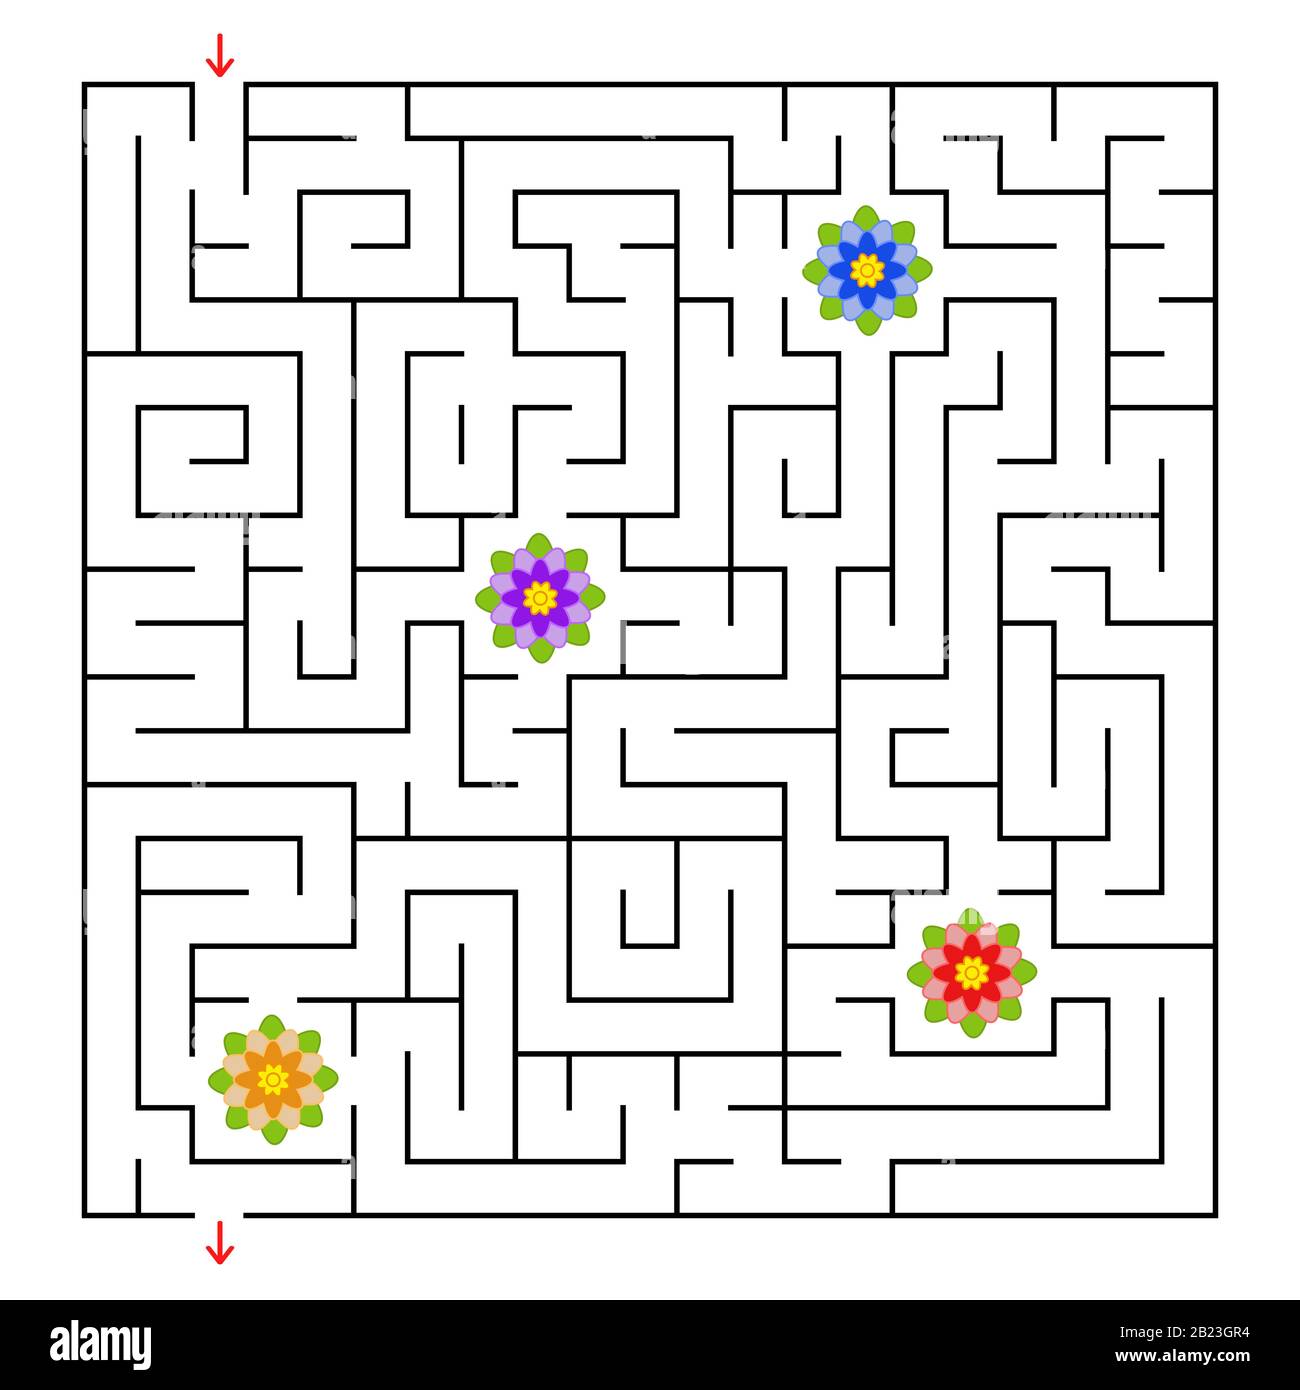 Un labirinto quadrato. Raccogliere tutti i fiori e trovare una via d'uscita dal labirinto. Semplice illustrazione vettoriale piatta isolata Illustrazione Vettoriale